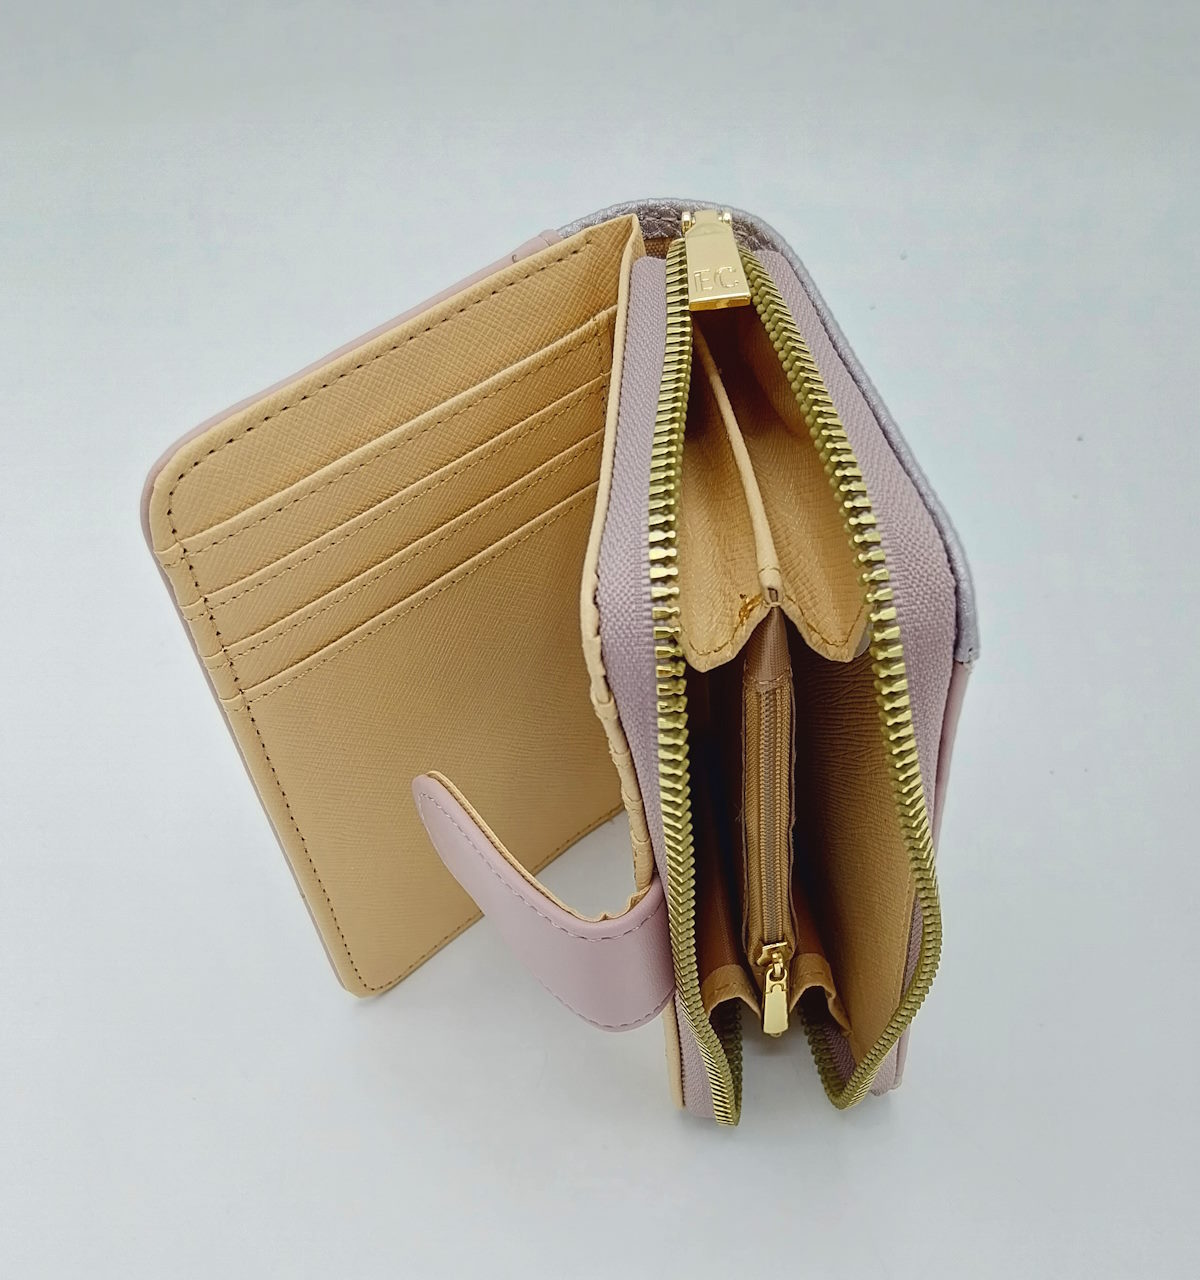 Eco leather wallet, EC Coveri, art. EC24500-004